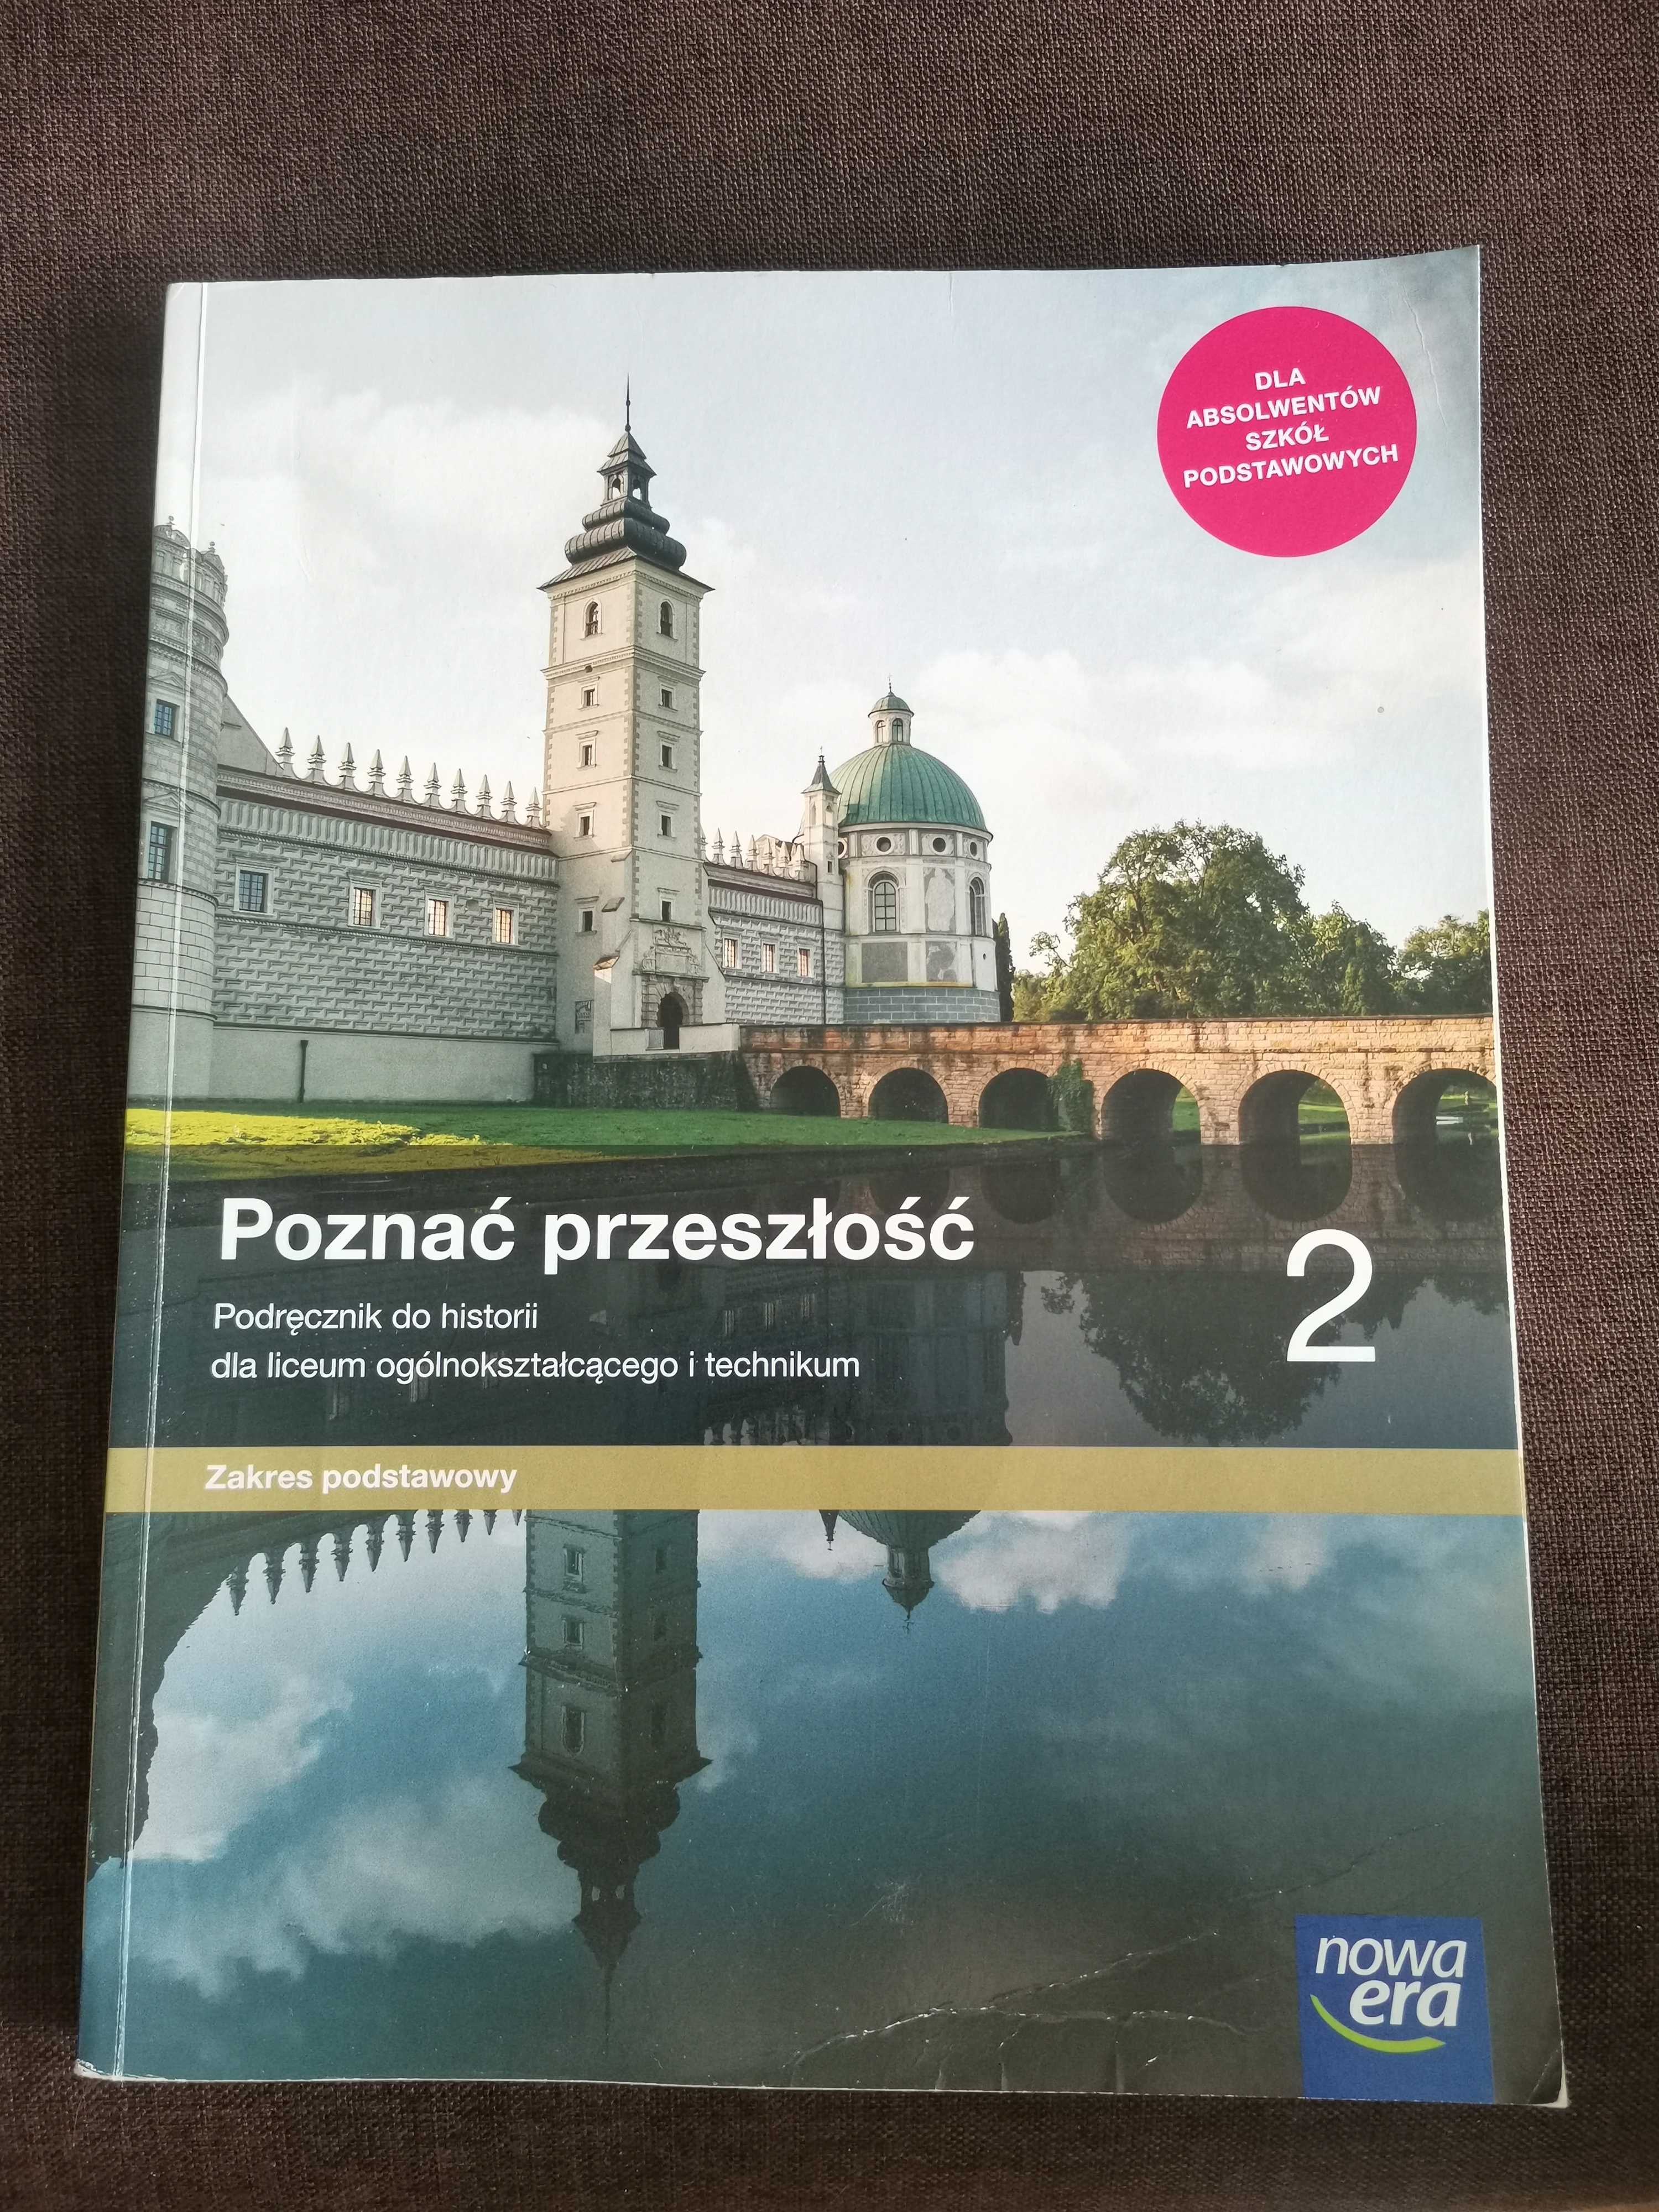 of course custom answer Poznać przeszłość 2. Podręcznik do historii. Zakres podstawowy Złocieniec •  OLX.pl